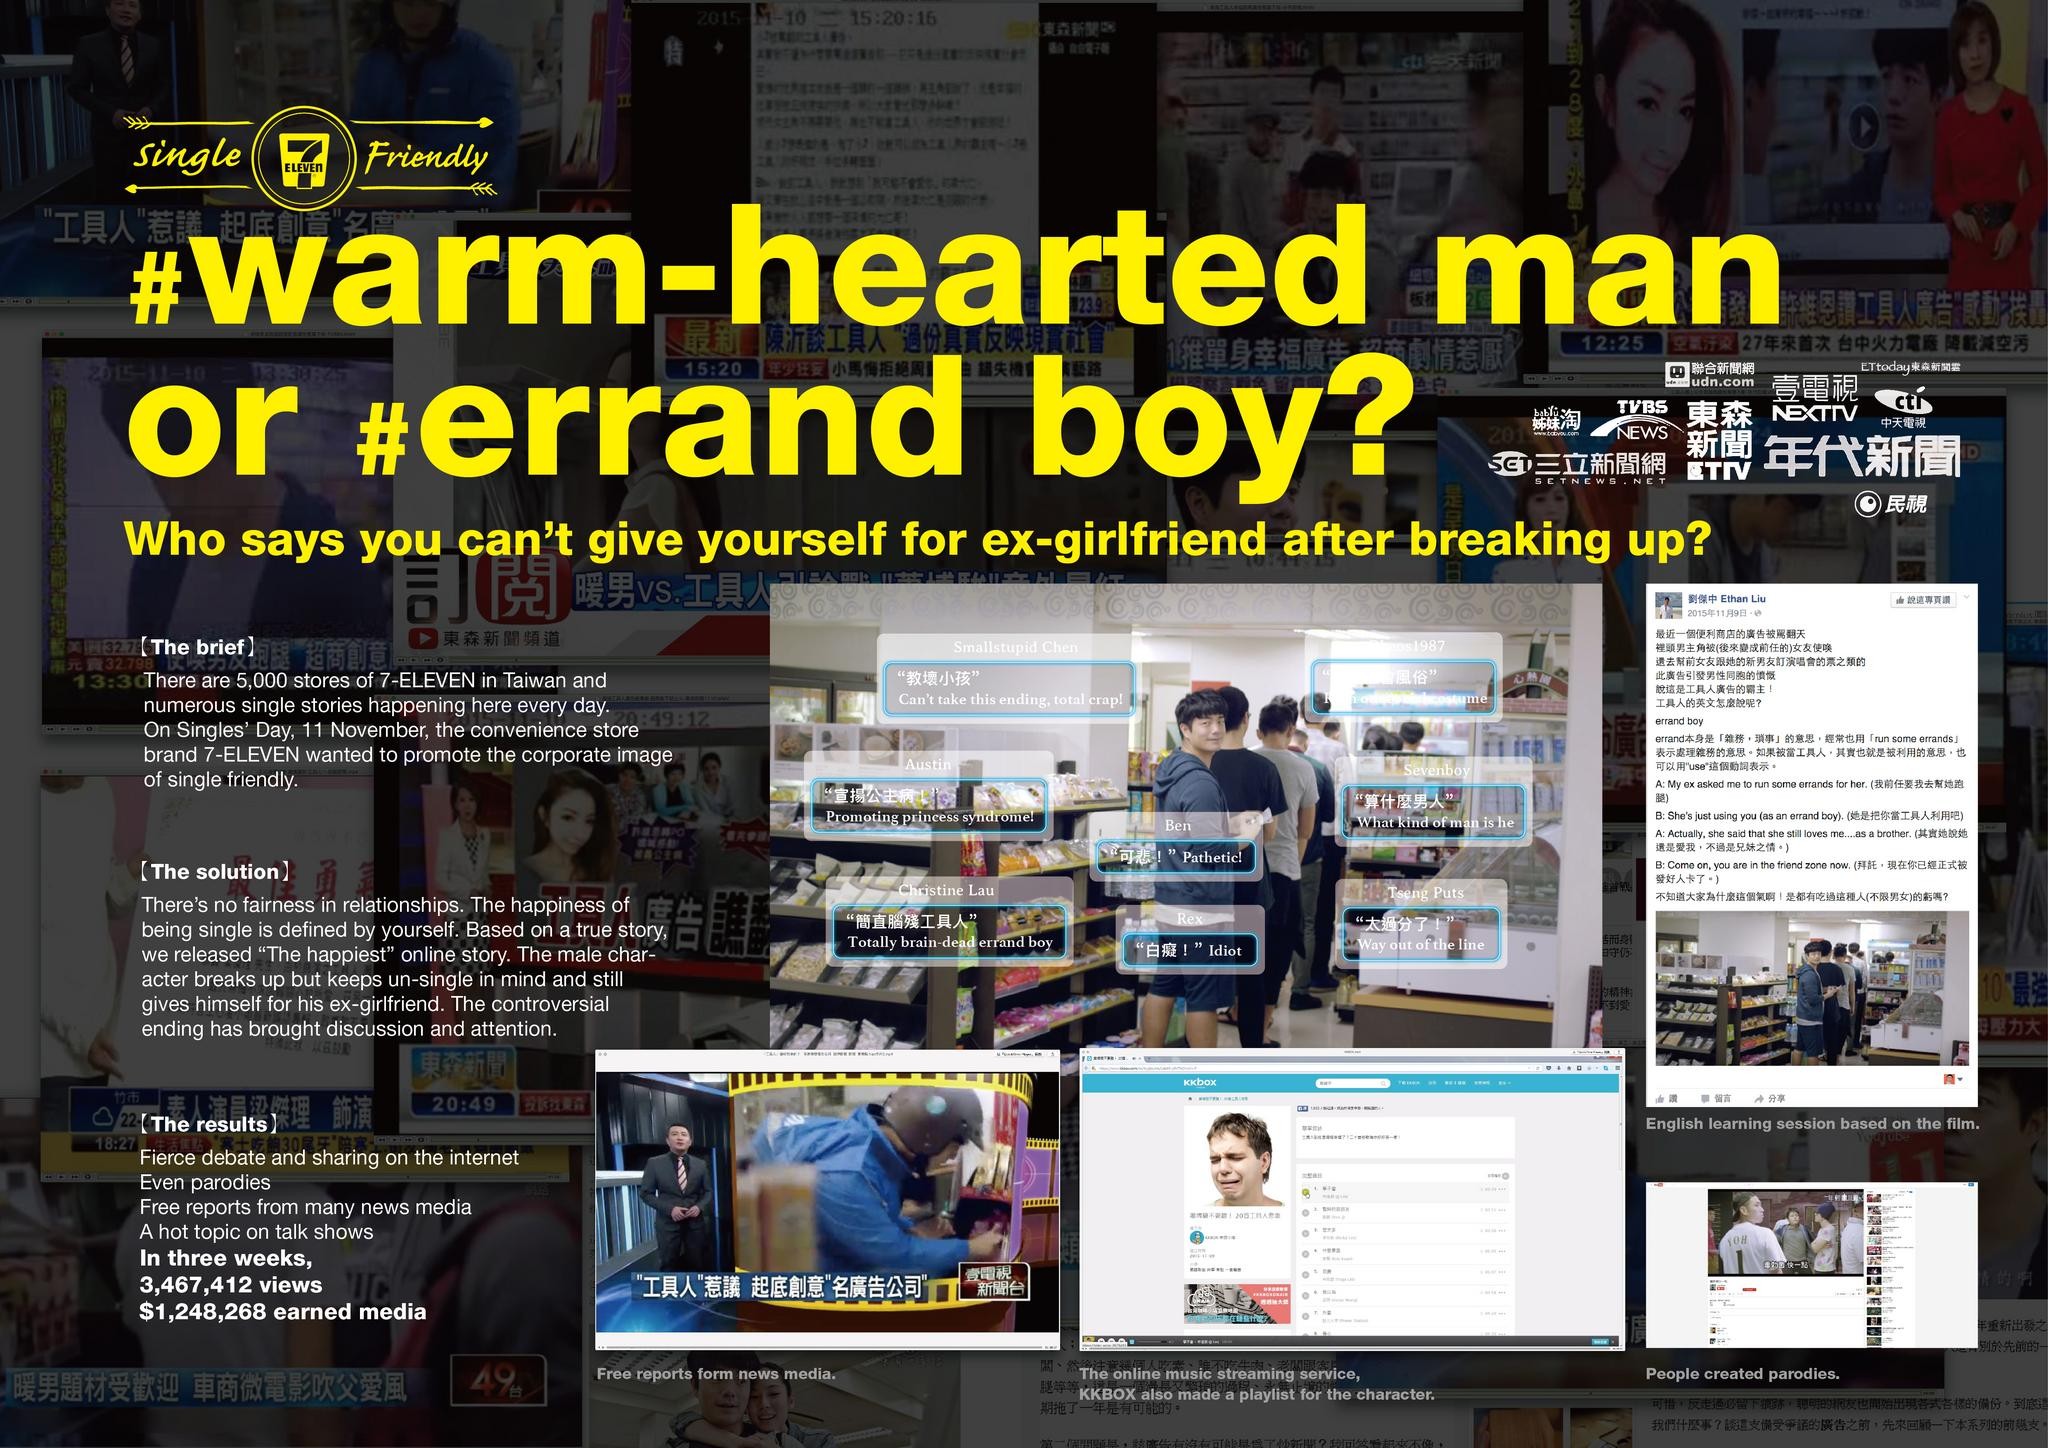 Warm-hearted man or errand boy?